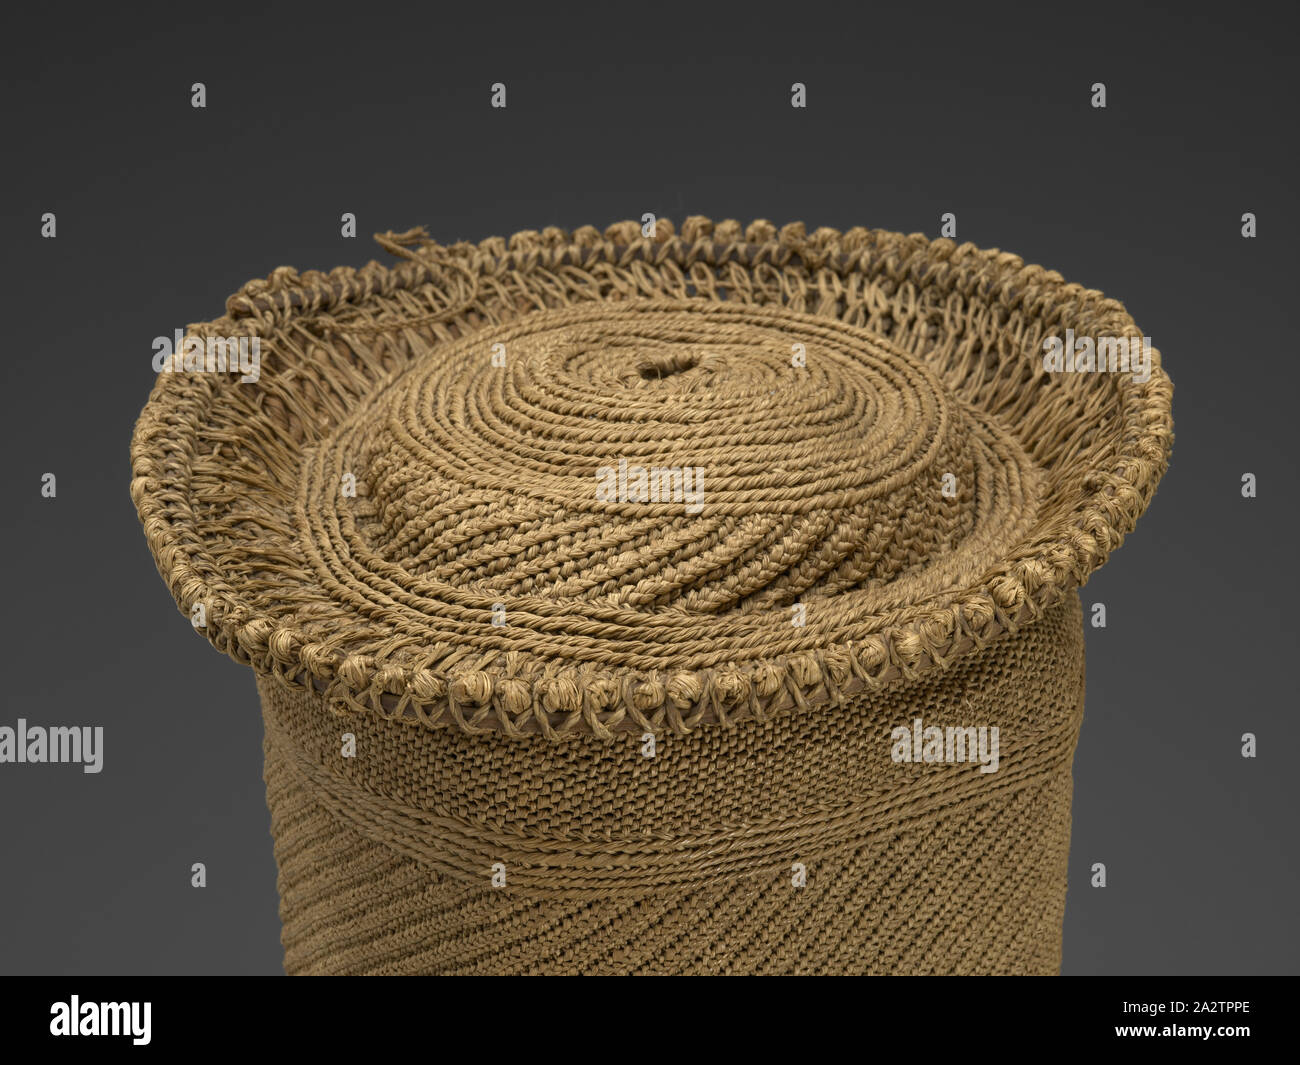 Chief's hat; (botolo), Mongo, 1880-1900, fibre (intrecciati rafia), corteccia, 8 x 7 x 7 in., tessile e della moda arte Foto Stock